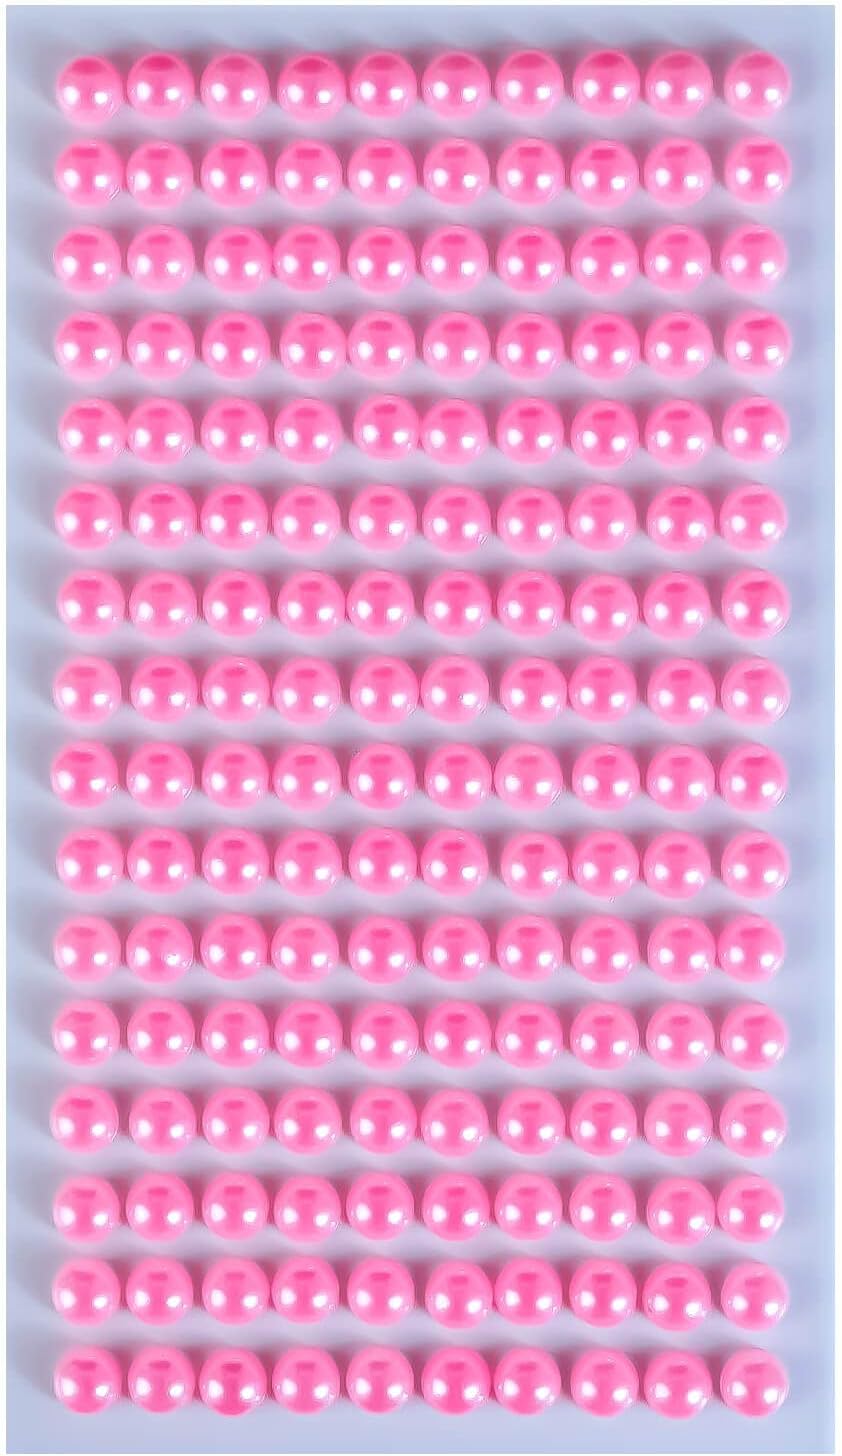 110 ラインストーンシール(デコシール) パールタイプ 6ミリ【ピンク】1シート きらきらぷんぷん丸